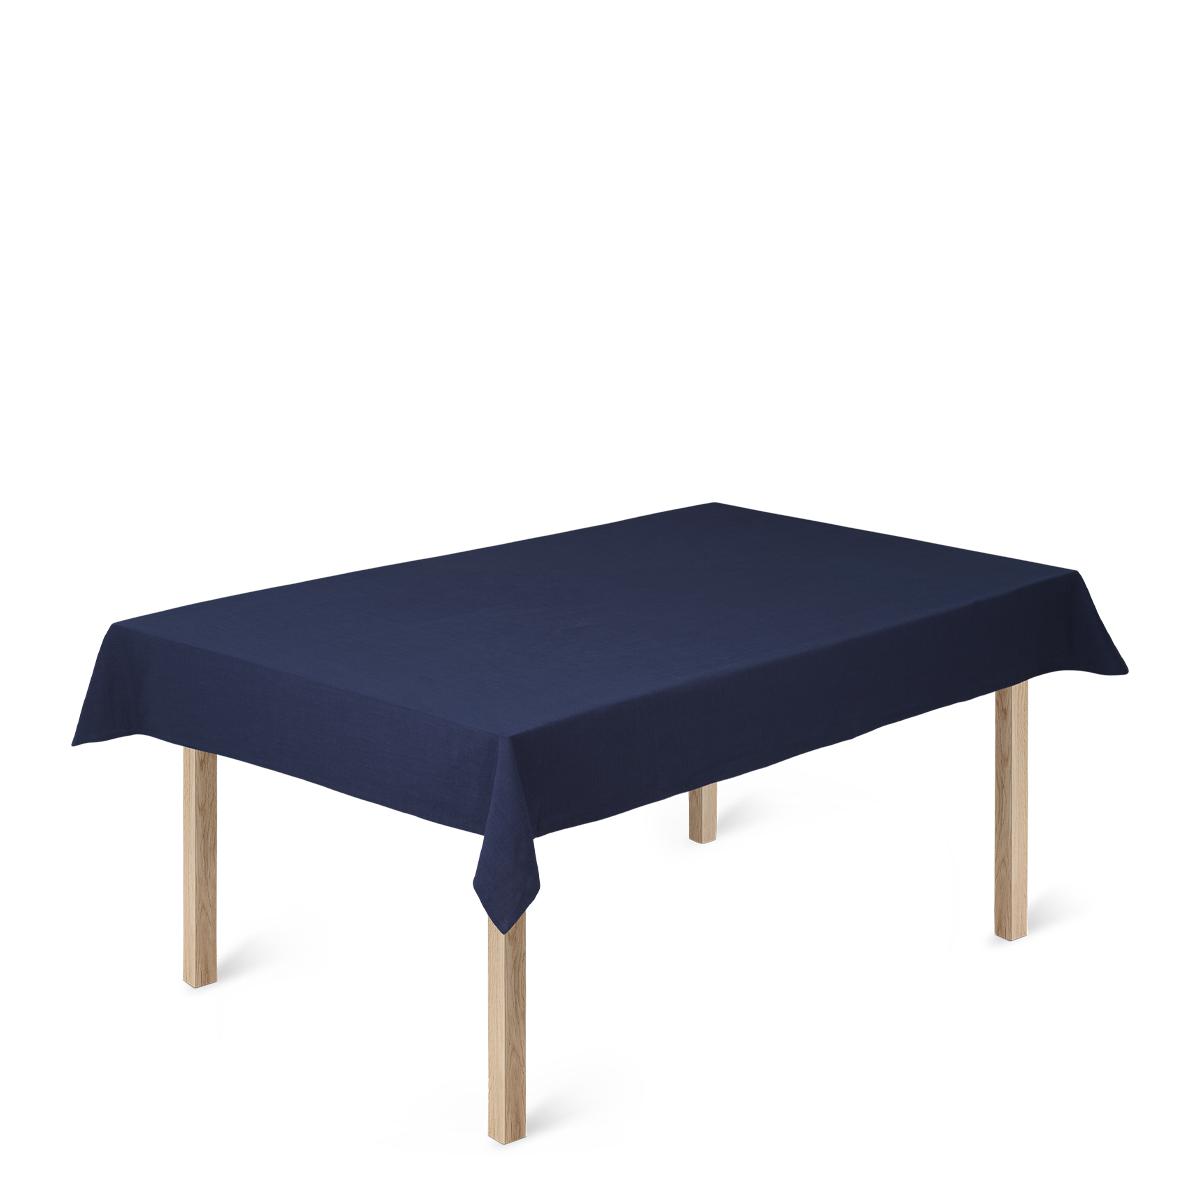 Toca de mesa de algodão BASIC BASIC 150 x370 cm, azul escuro